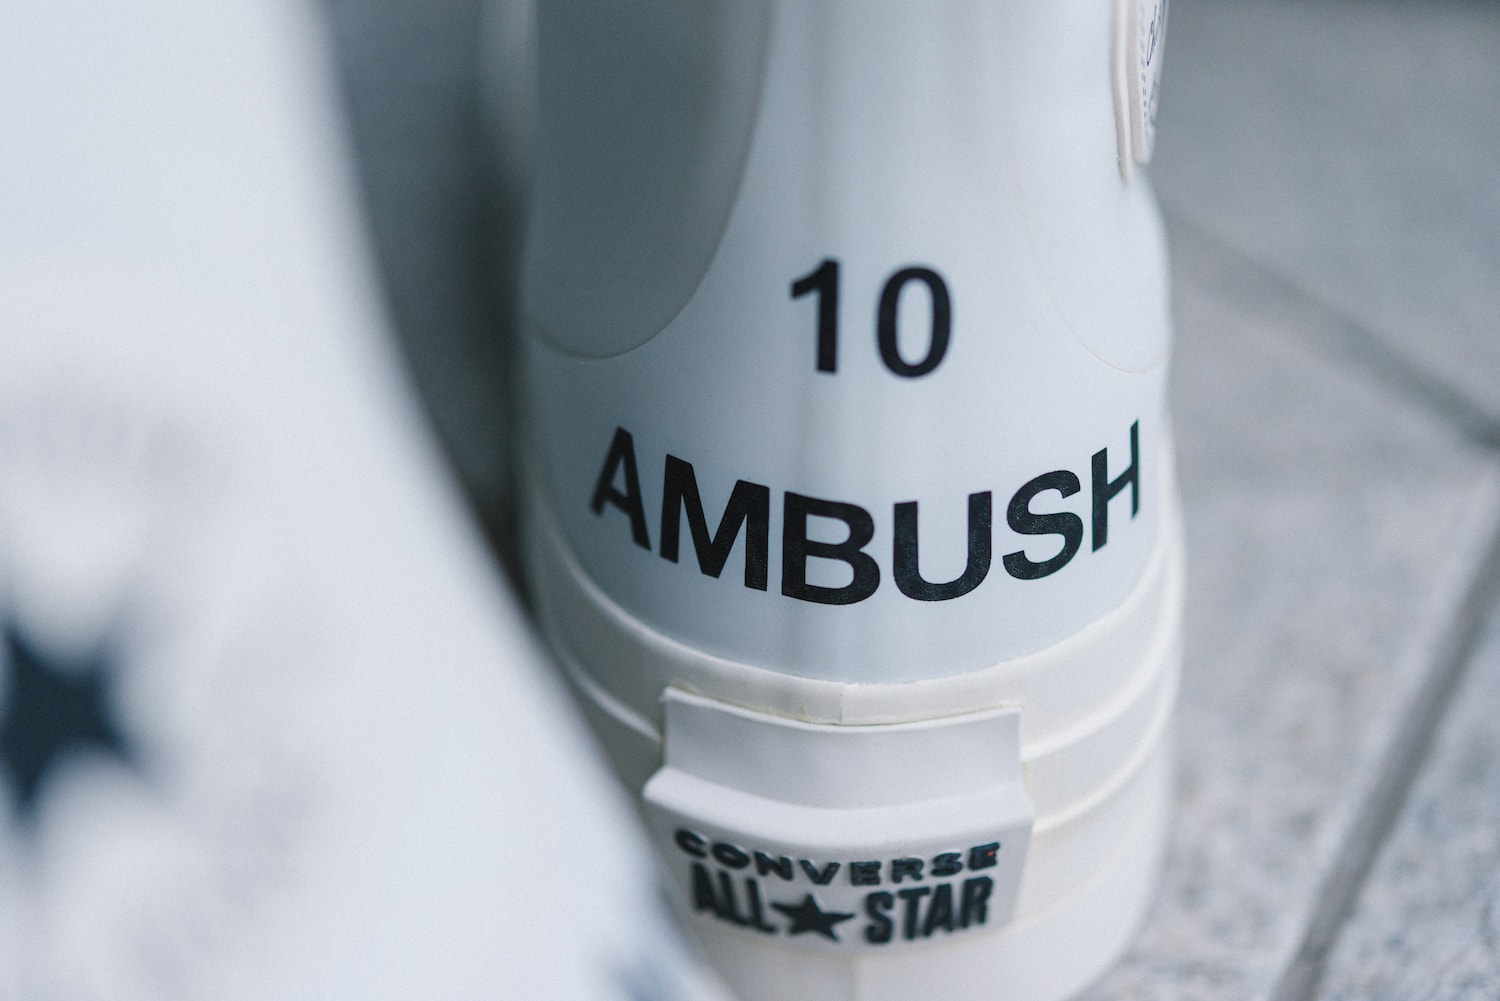 近賞 AMBUSH x Converse Chuck 70 & Pro Leather 全新联名鞋款